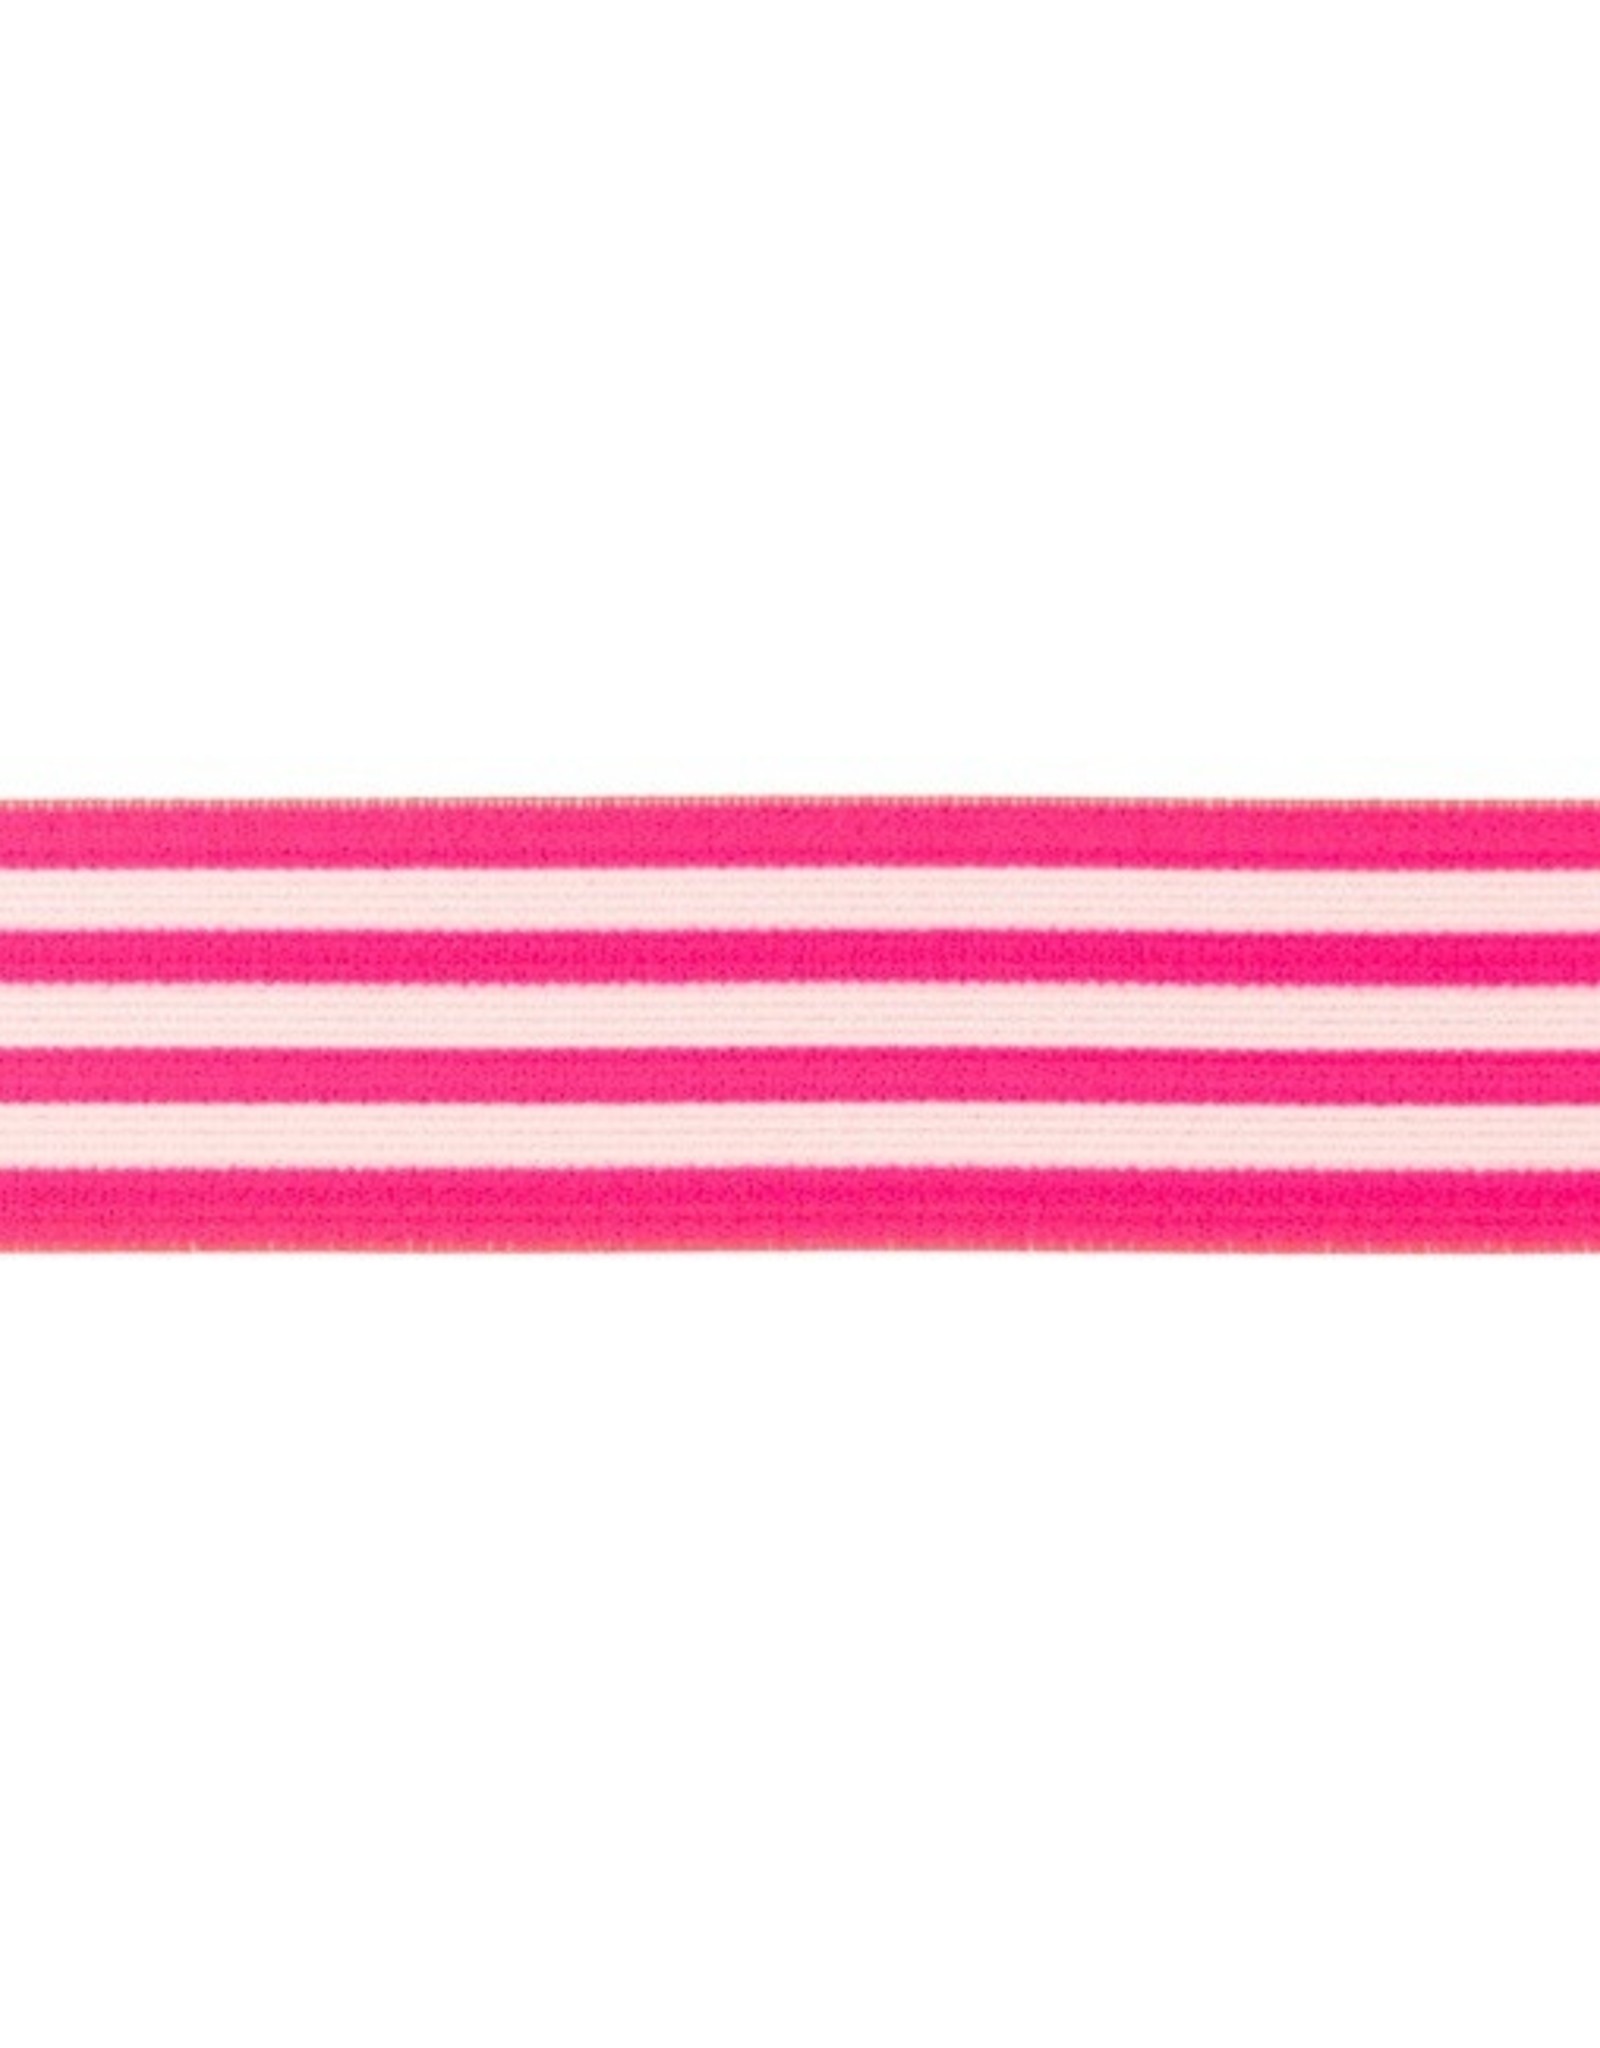 Elastiek gestreept neon flue roze-wit 40mm